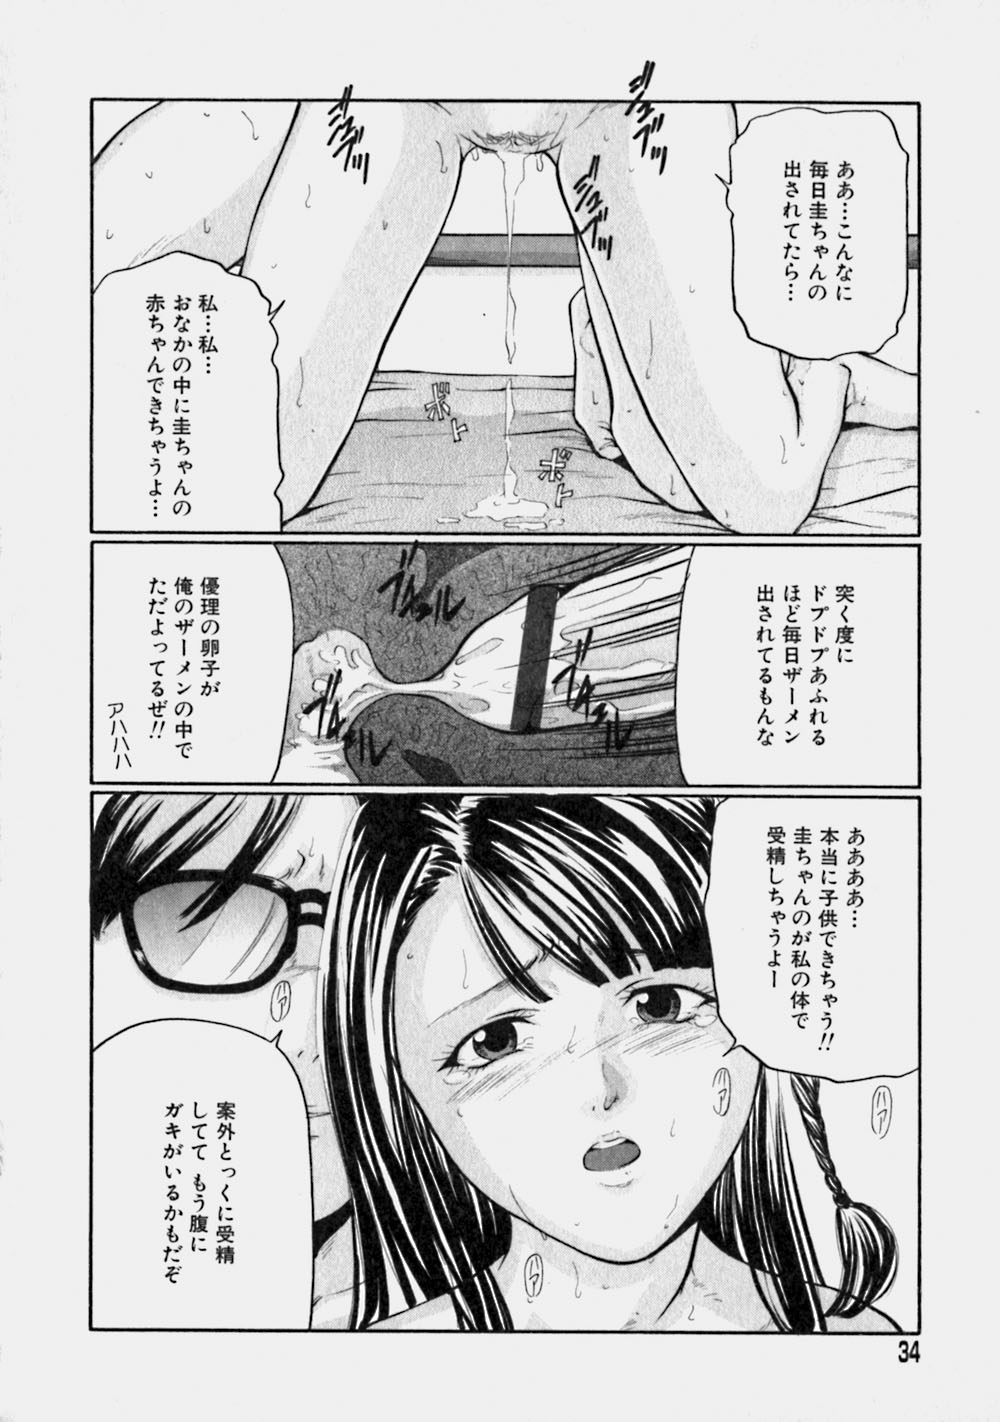 [Matsusaka Takeshi] Reversible page 33 full